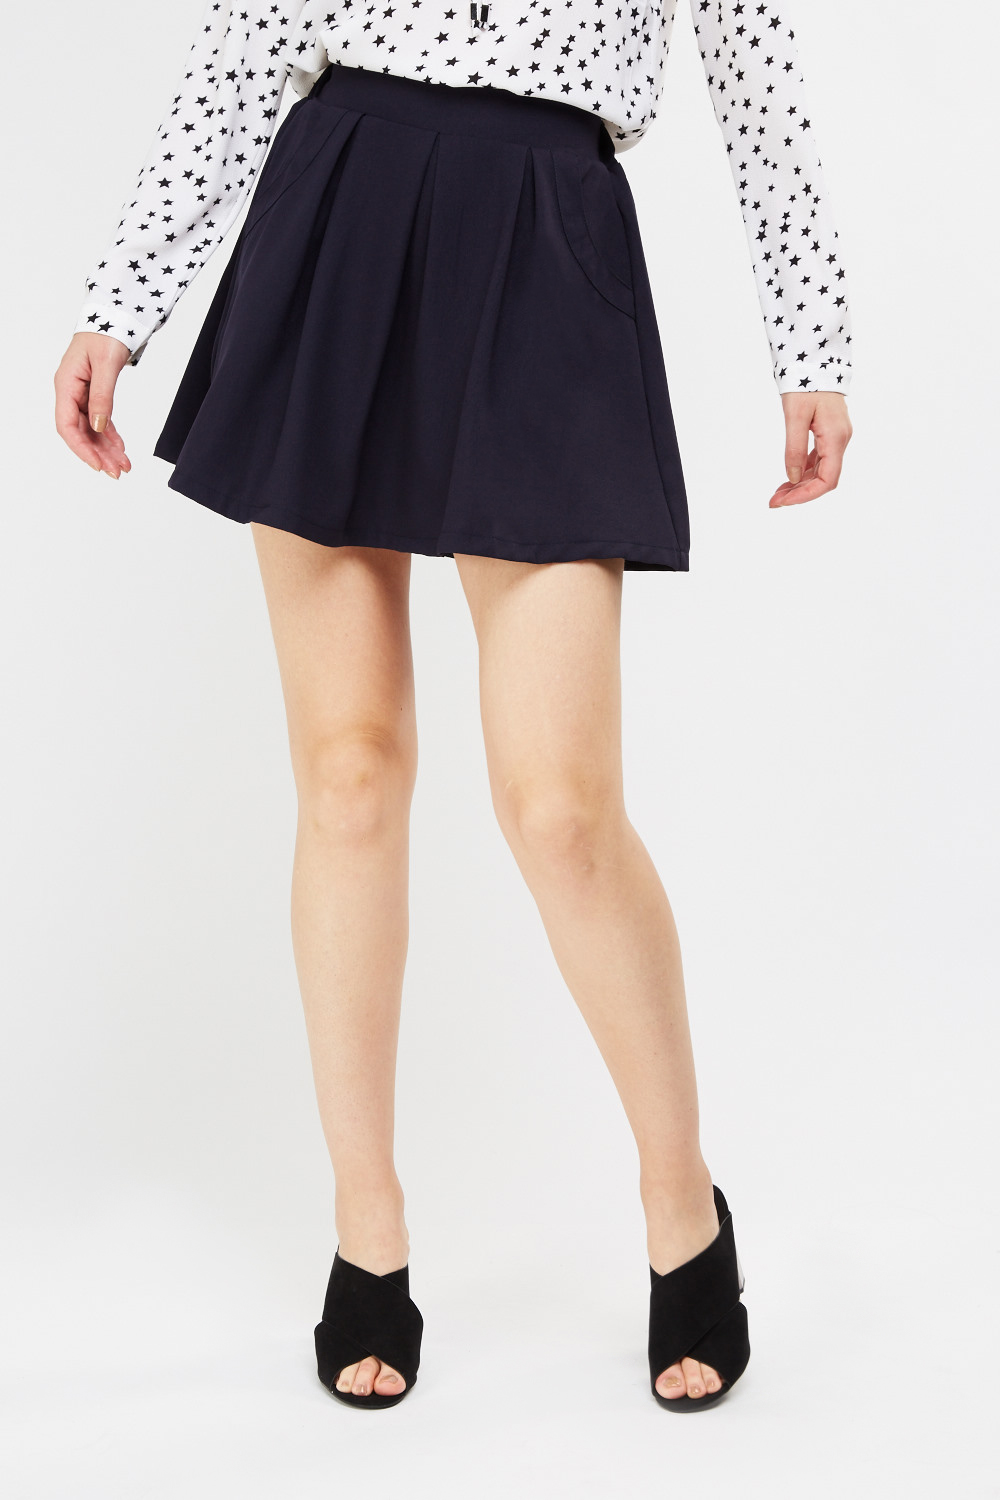 Box Pleat Mini Skirt - Just $7